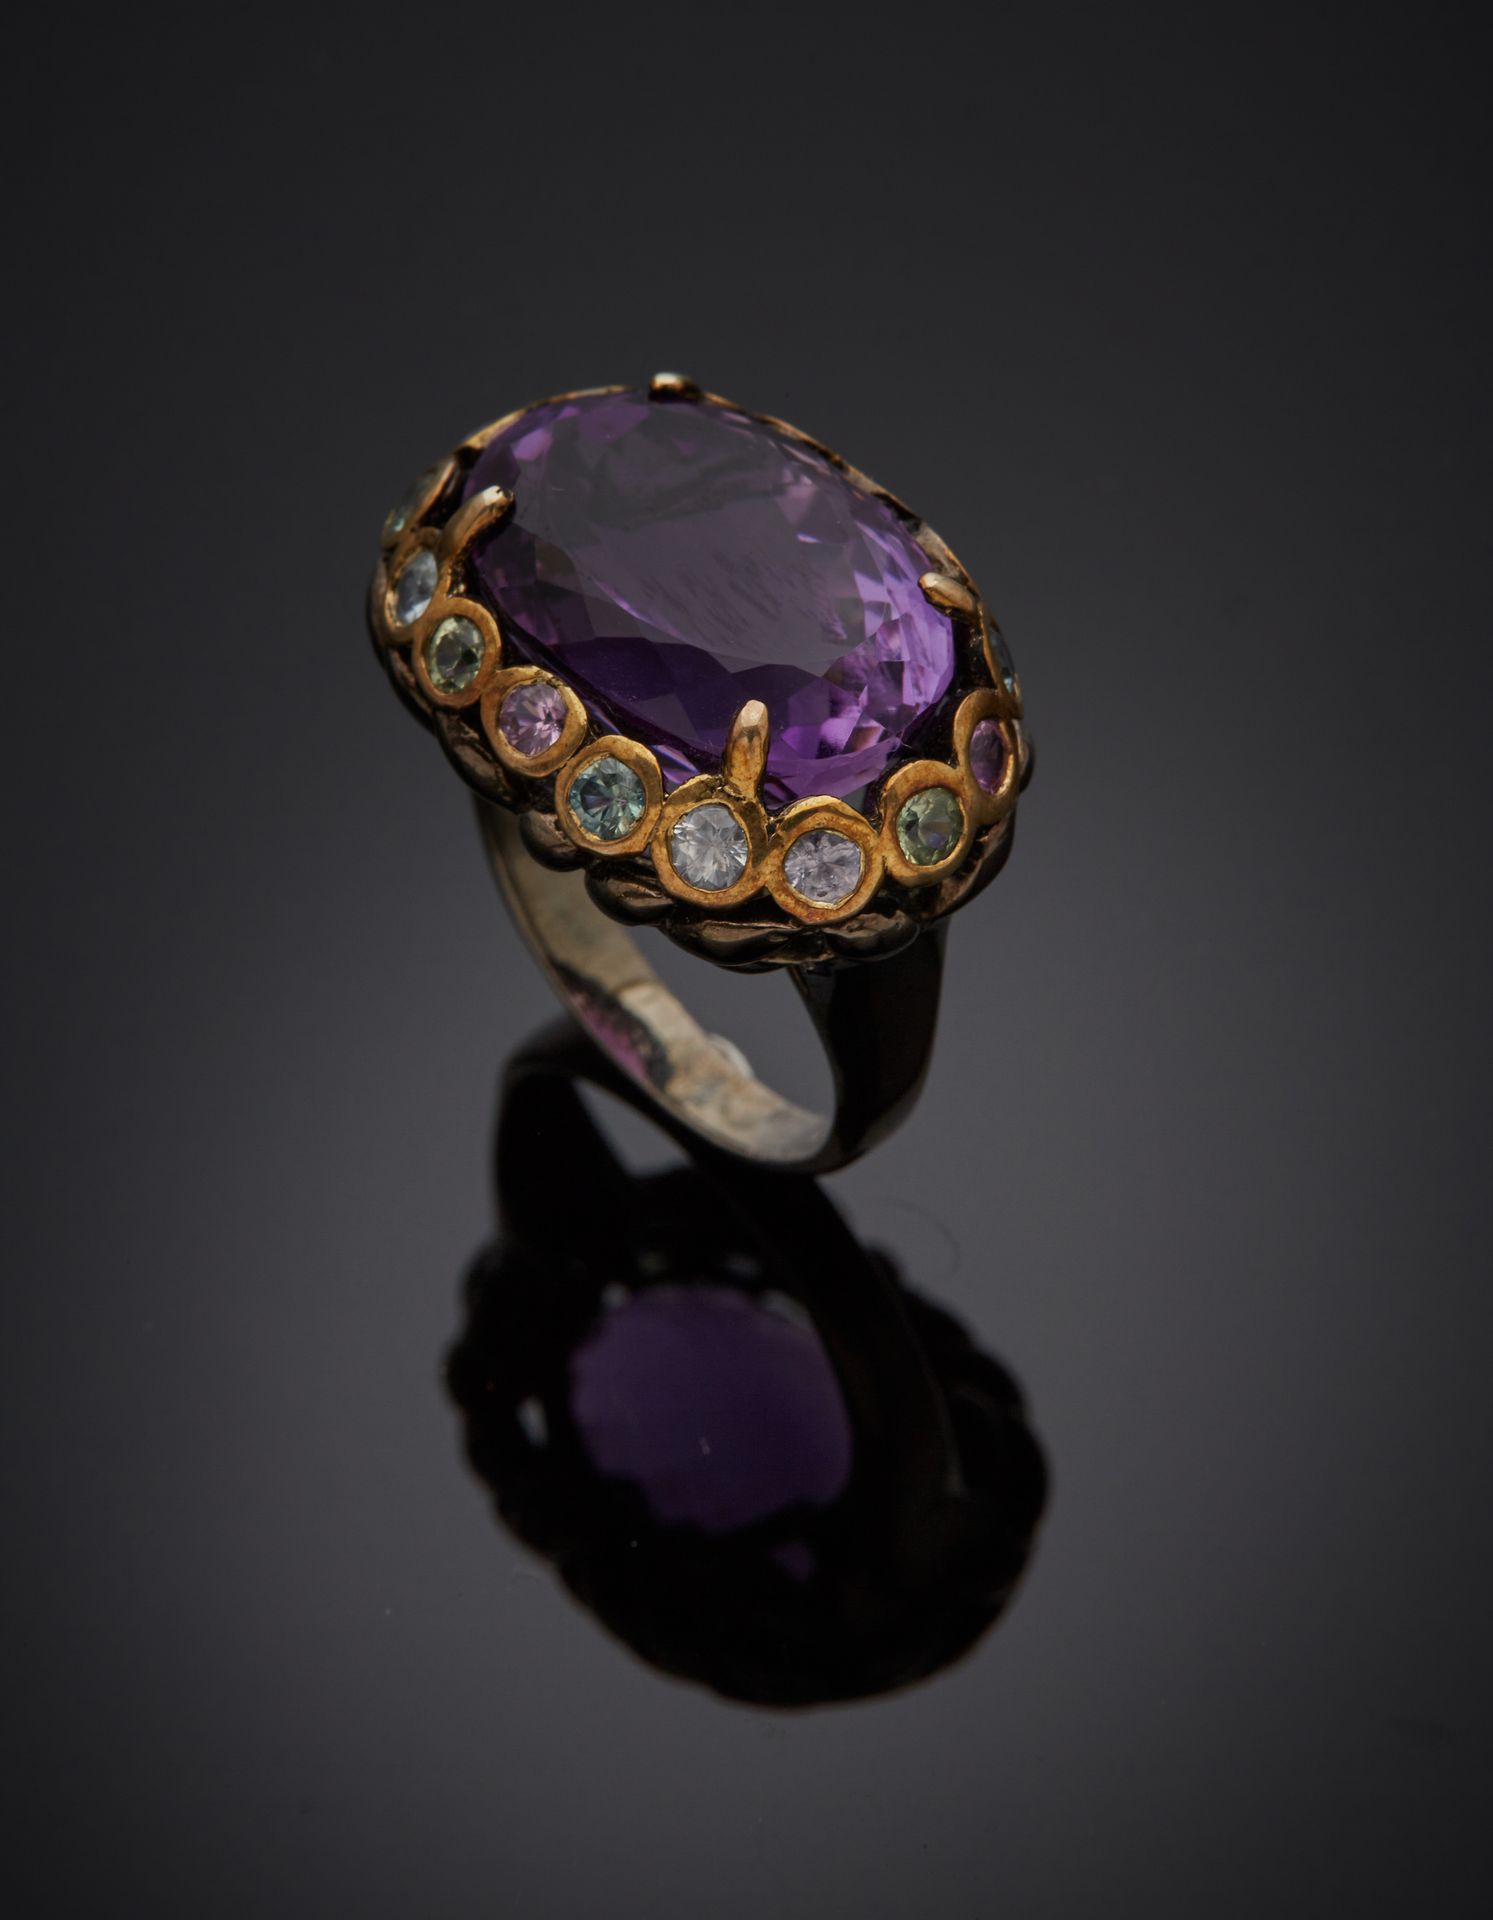 Null 发黑的银和镀金(925‰)镂空戒指，镶嵌着一颗重约10克拉的椭圆形紫水晶，周围是粉色、绿色和蓝色黄宝石。
手指 : 56-57 - 毛重 : 9,6 &hellip;